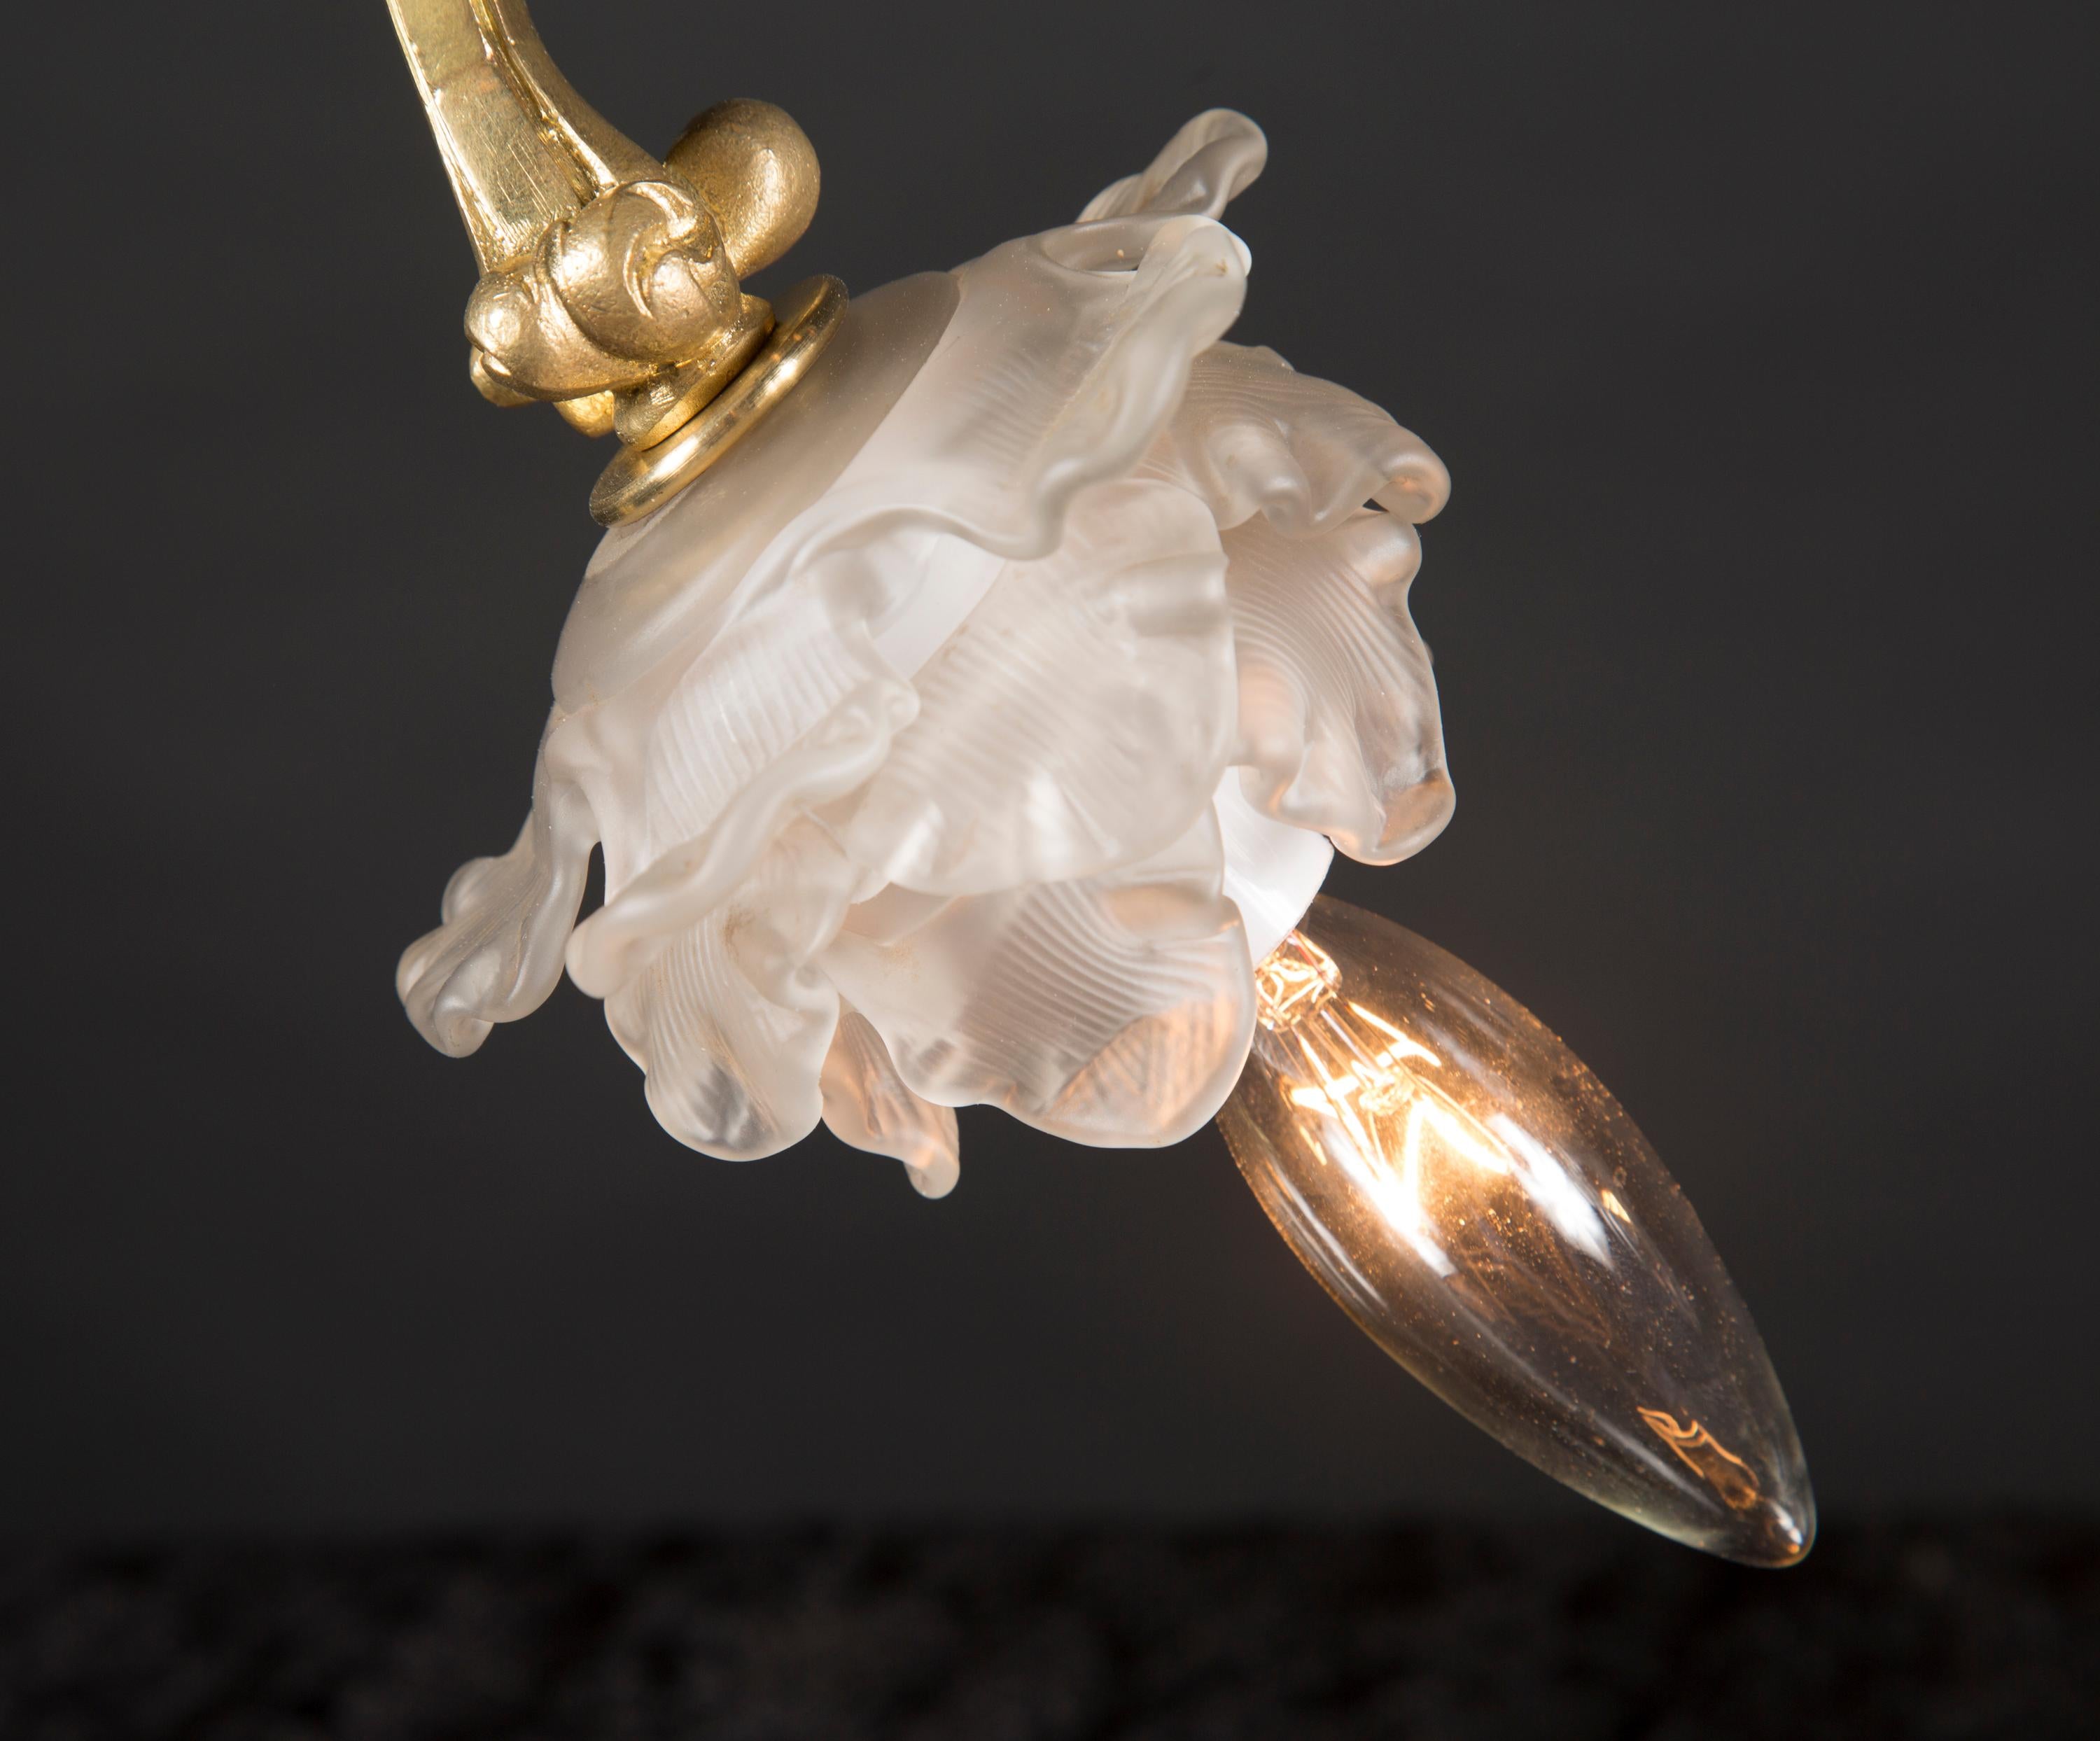 Ces élégantes lampes art nouveau à une seule lumière proviennent directement de France et datent de la fin du 19e siècle. Leur forme est magnifique, reflétant les lignes curieuses de la nature, et elles présentent de délicates feuilles d'acanthe le